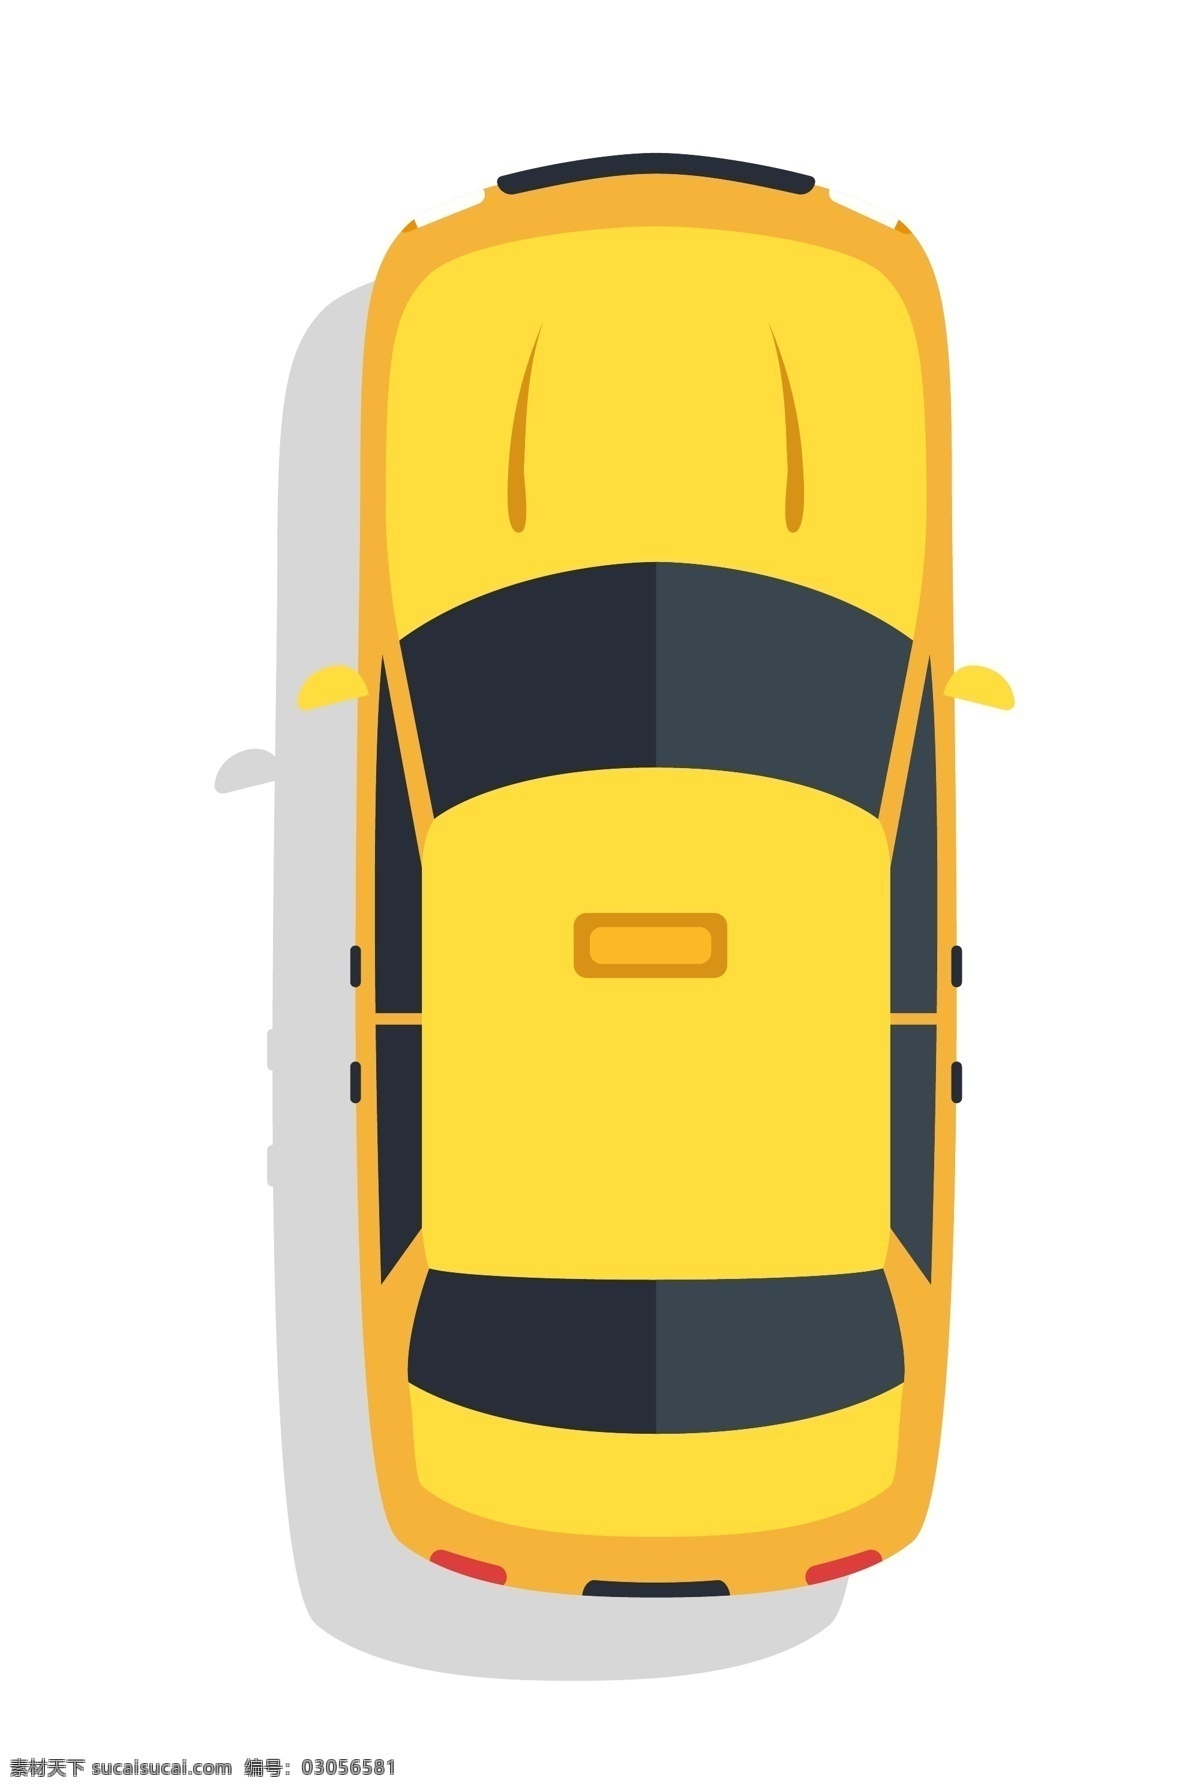 黄色 私家 汽车 插图 外出的汽车 黄色汽车 小型汽车 漂亮的汽车 时尚的汽车 图案汽车 汽车装饰 交通工具